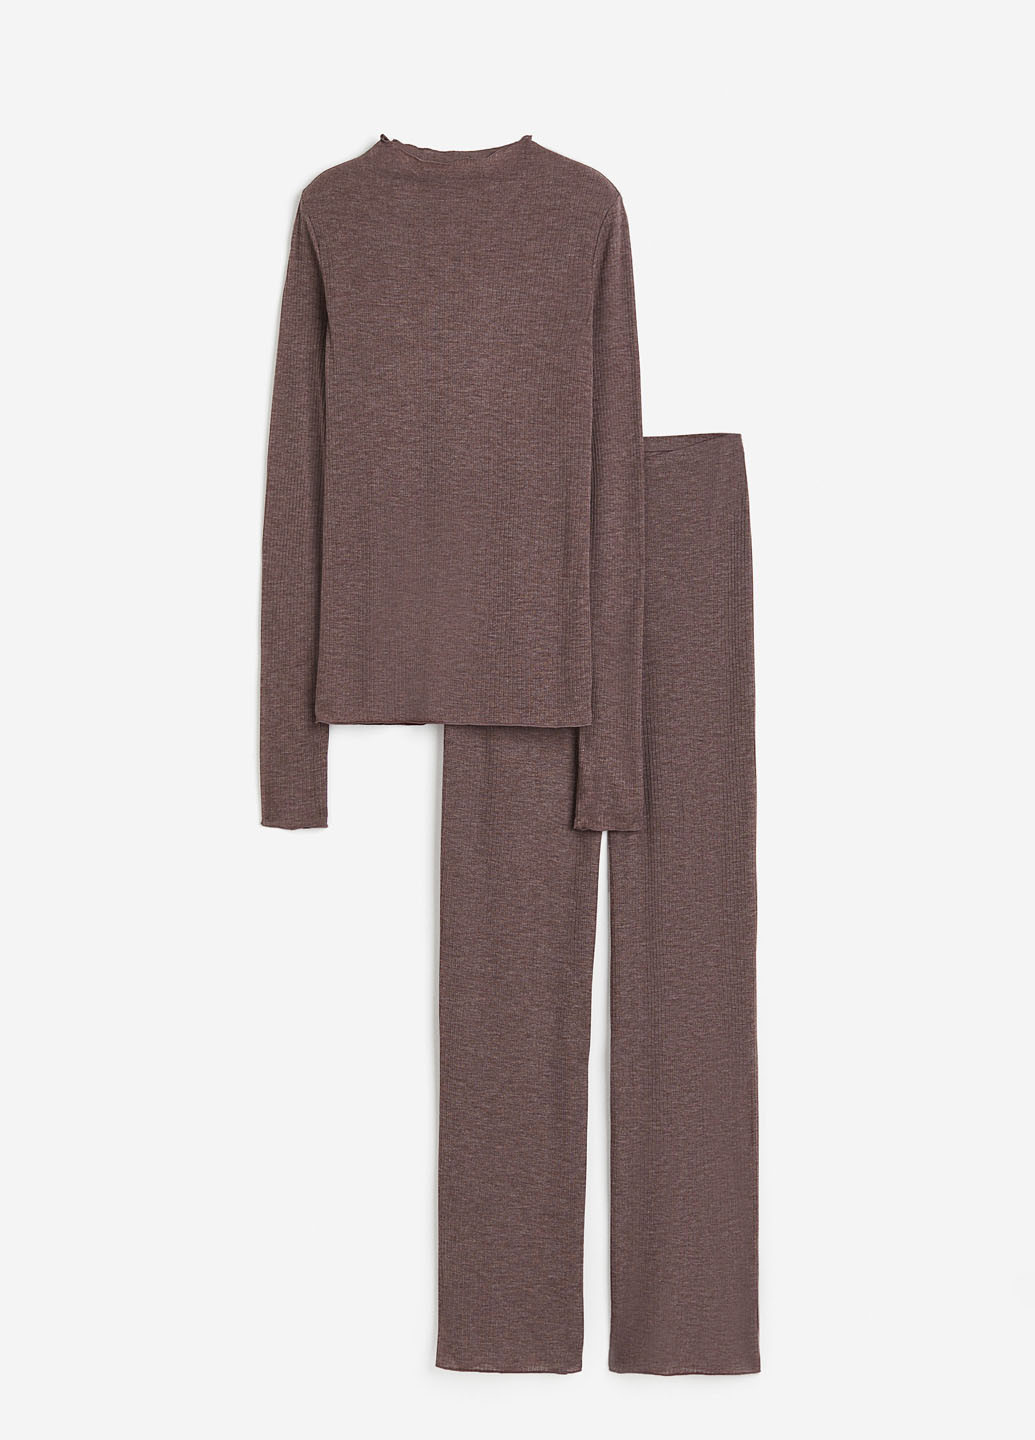 Коричневая всесезон пижама (лонгслив, брюки) лонгслив + брюки H&M